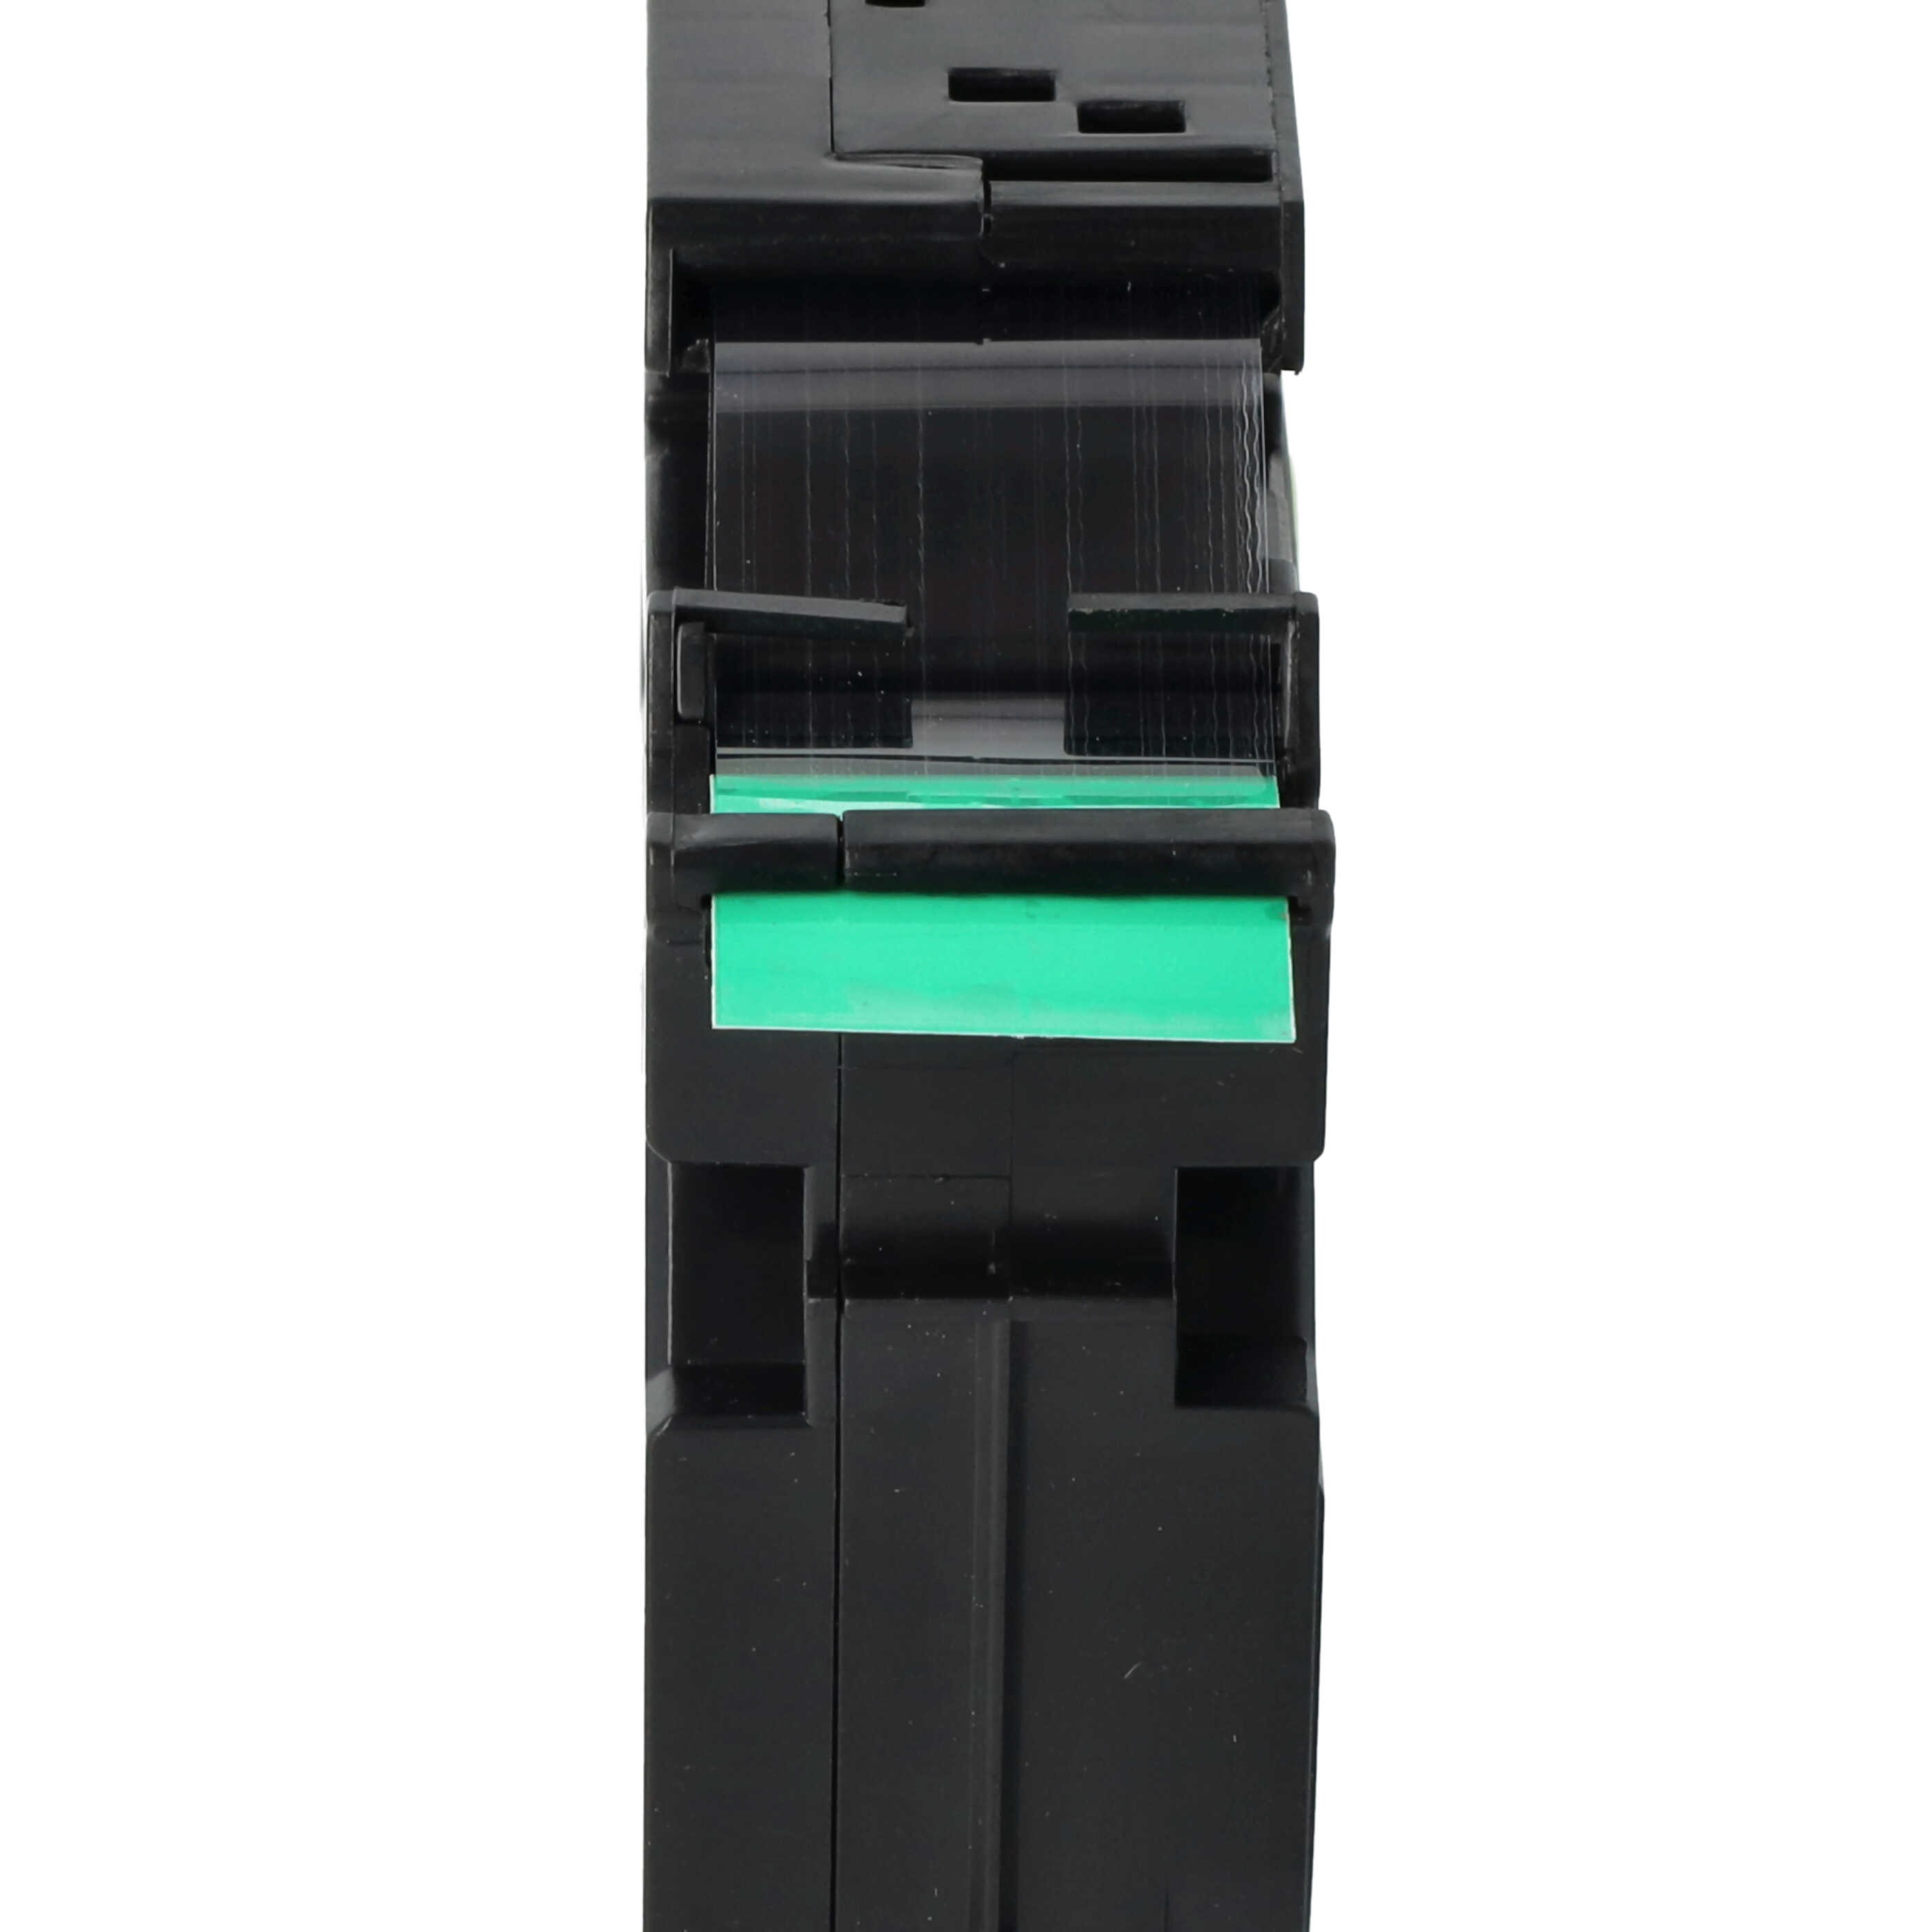 Casete cinta escritura reemplaza Brother TZE-S741 Negro su Verde